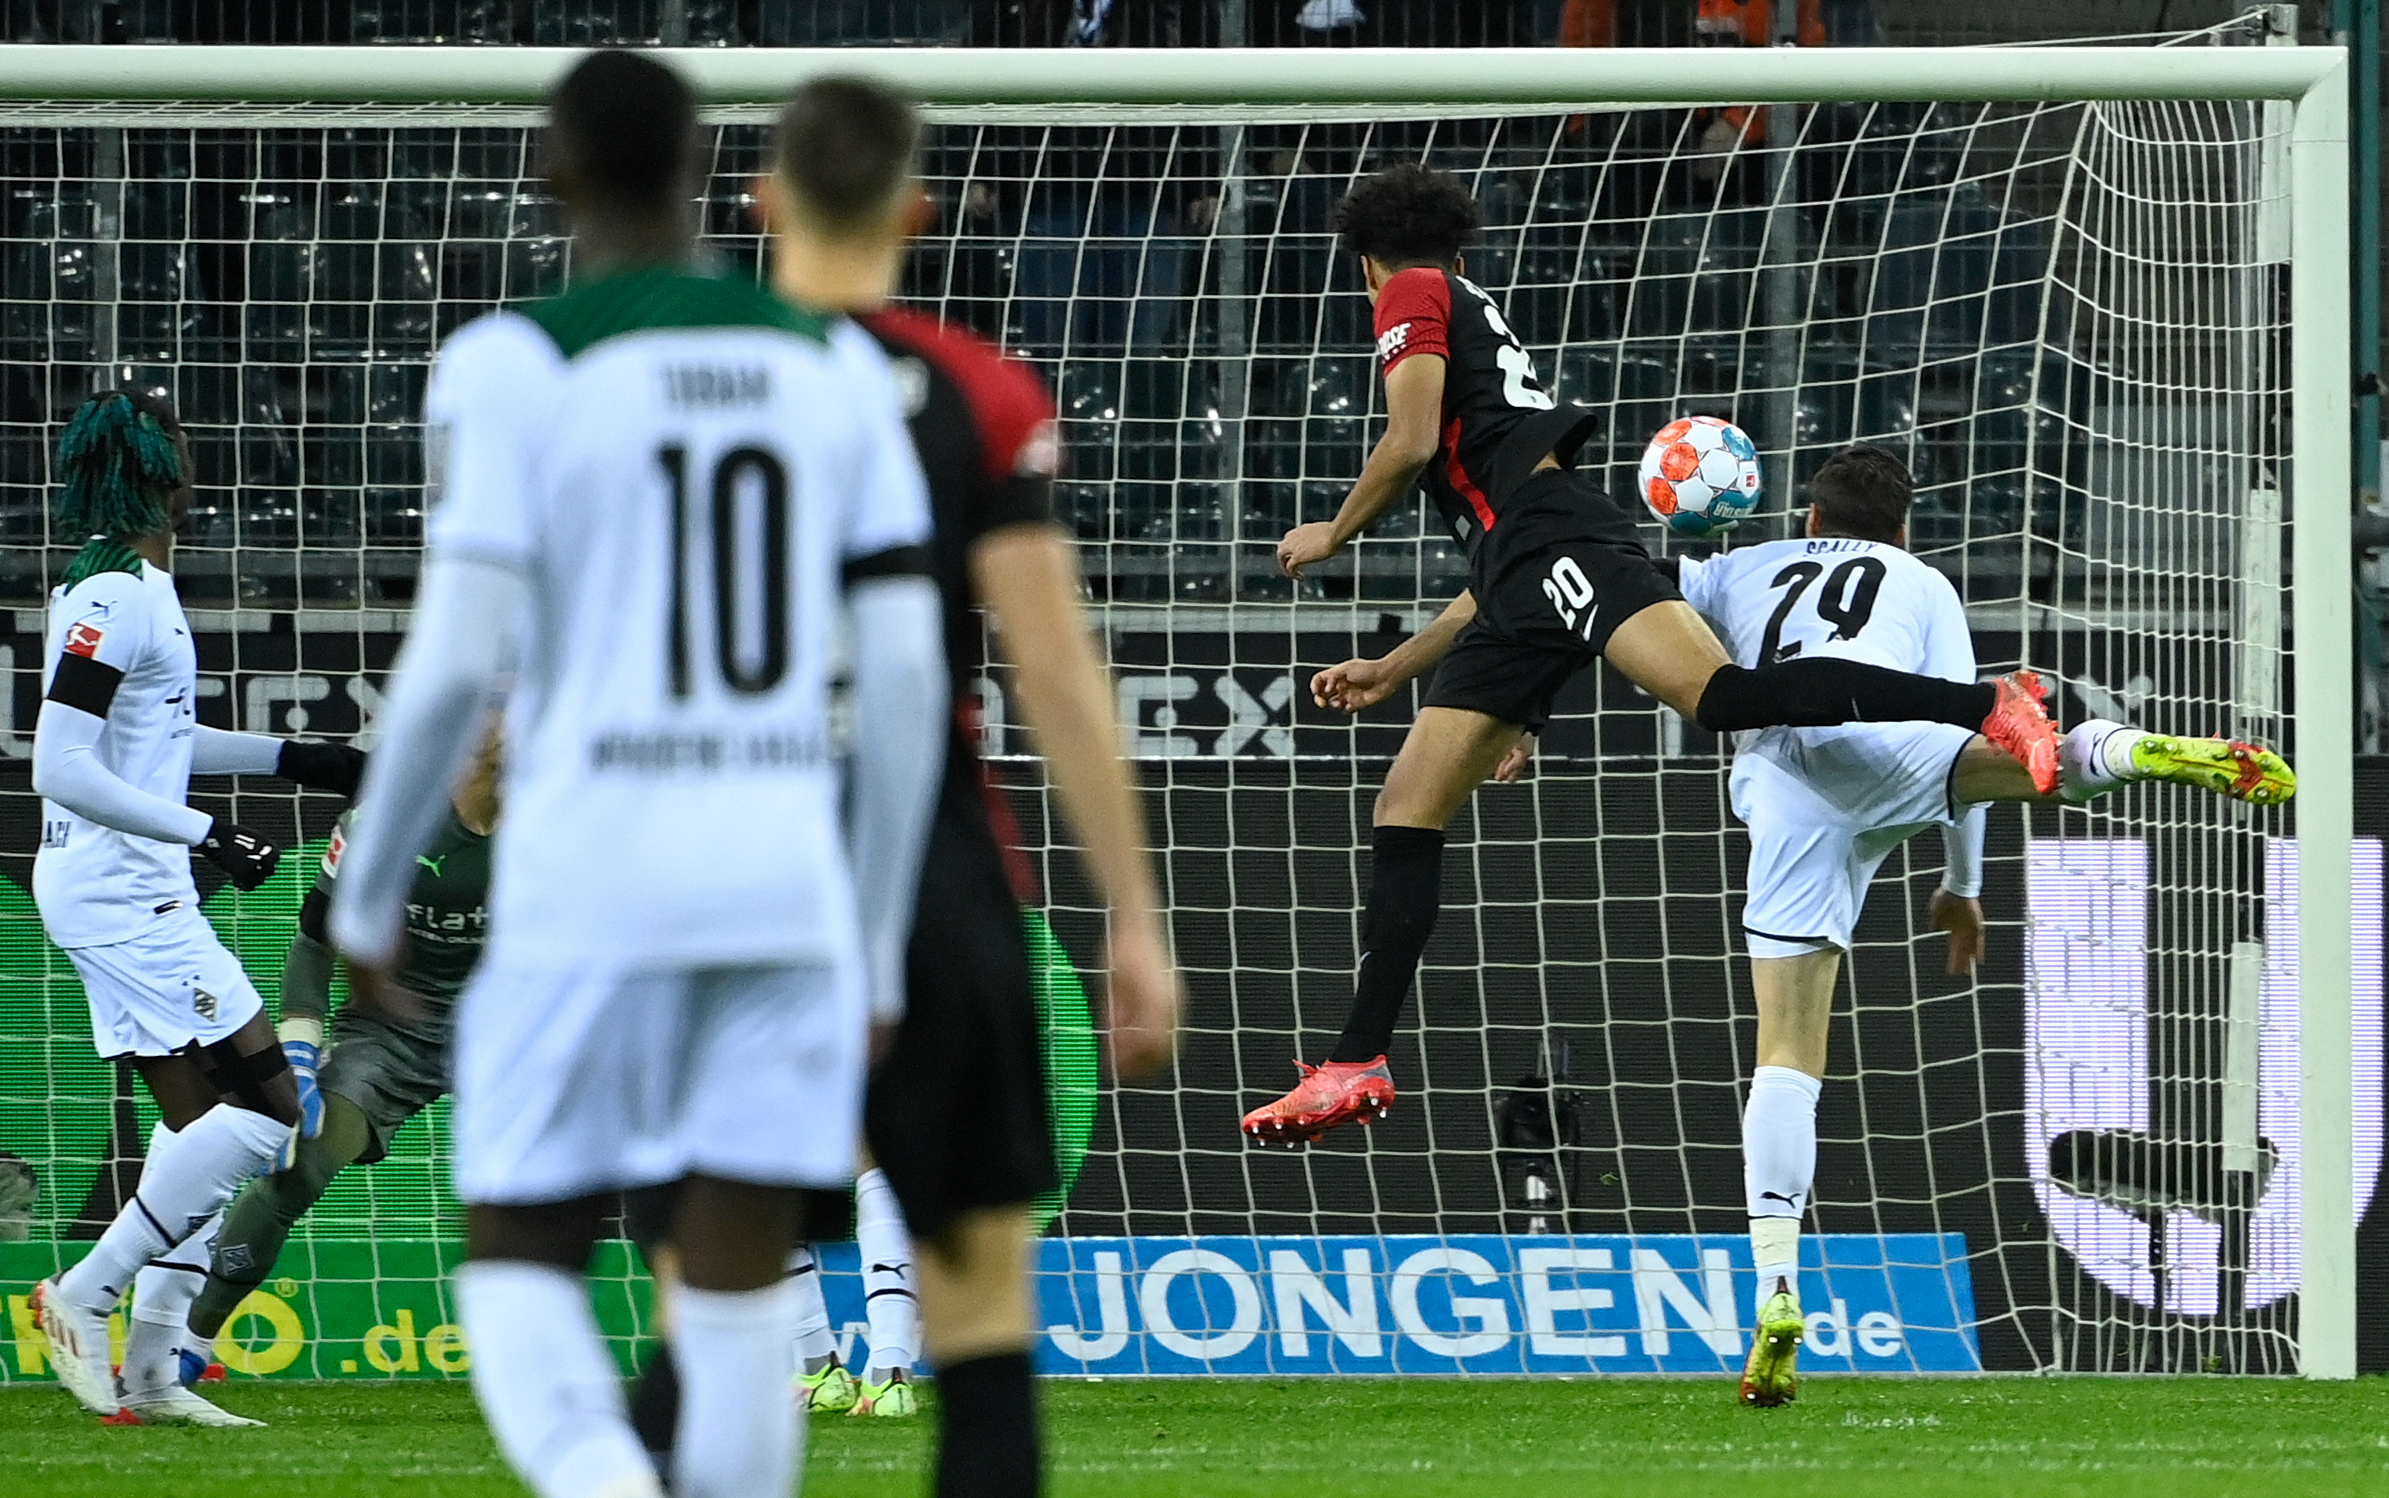 Kevin Schade goal v Borussia Monchengladbach